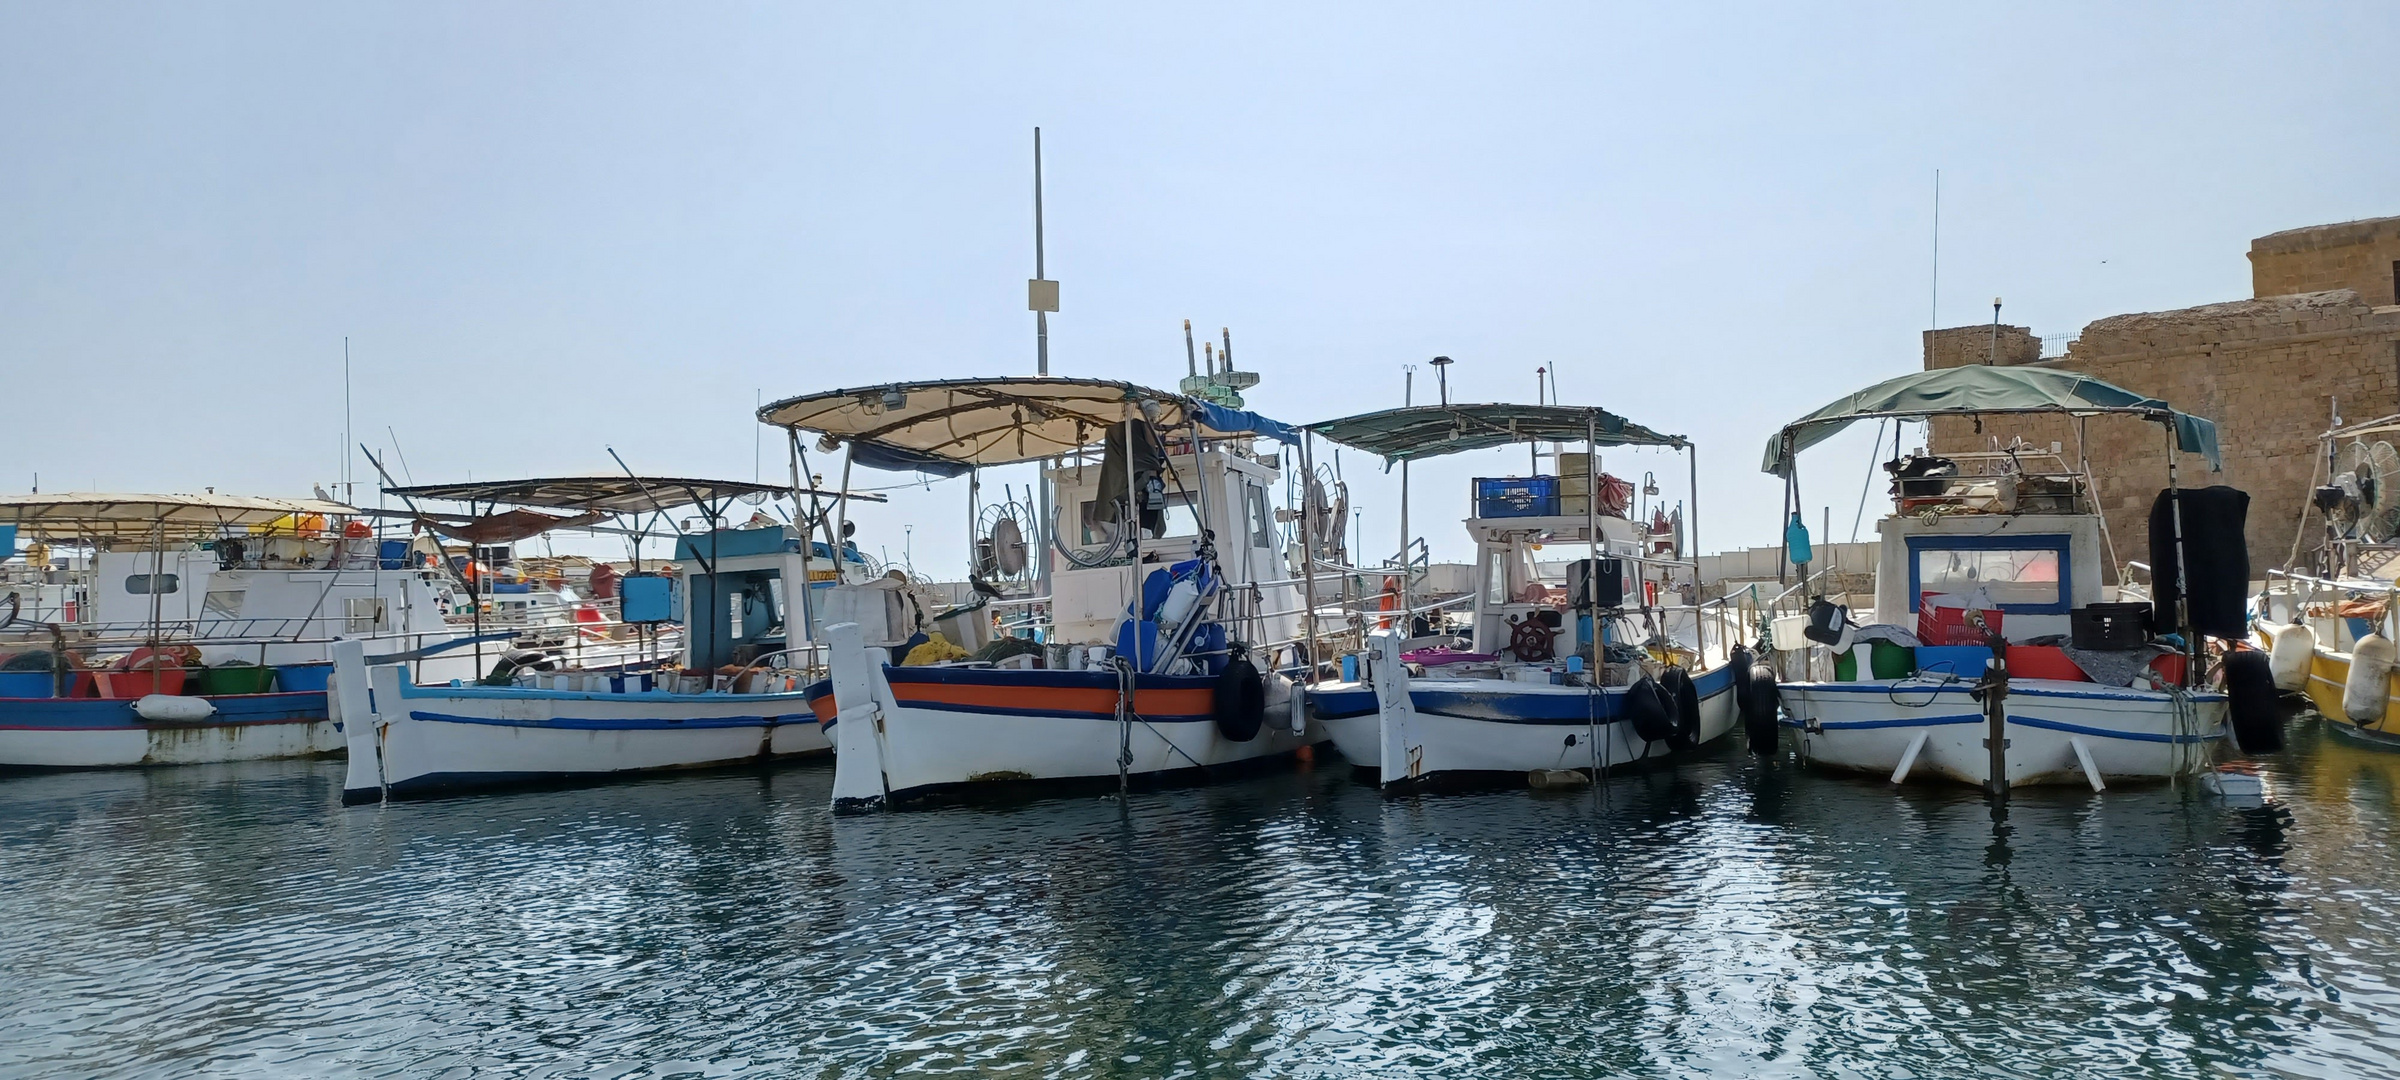 Der Hafen von Paphos